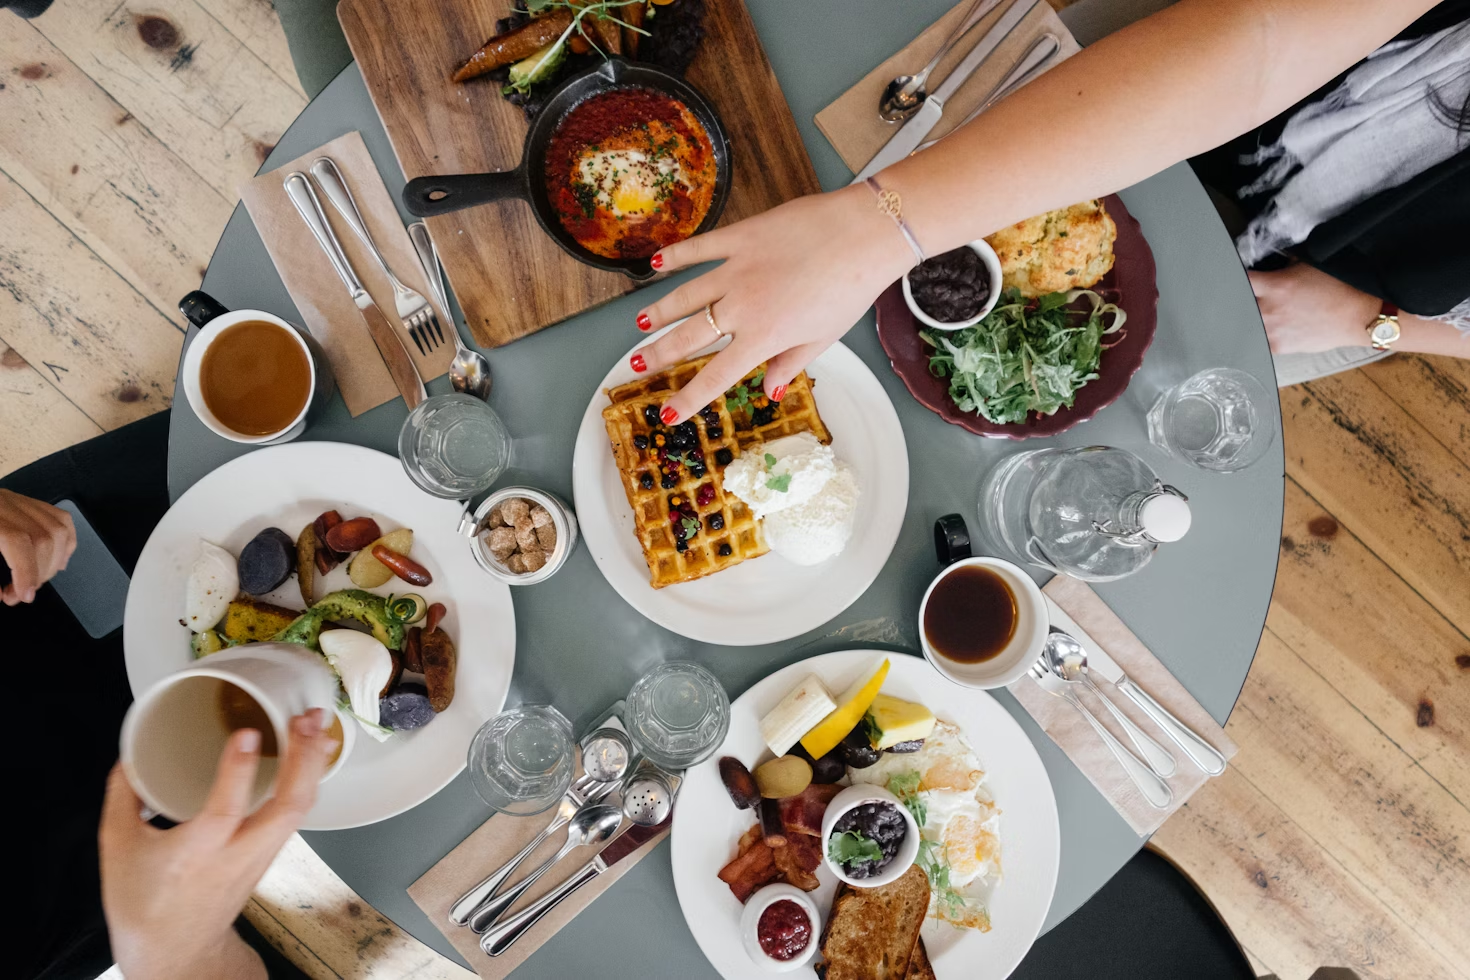 Variété d'aliments posés sur une table ronde et grise avec plusieurs personne tendant leur main pour attraper quelque chose